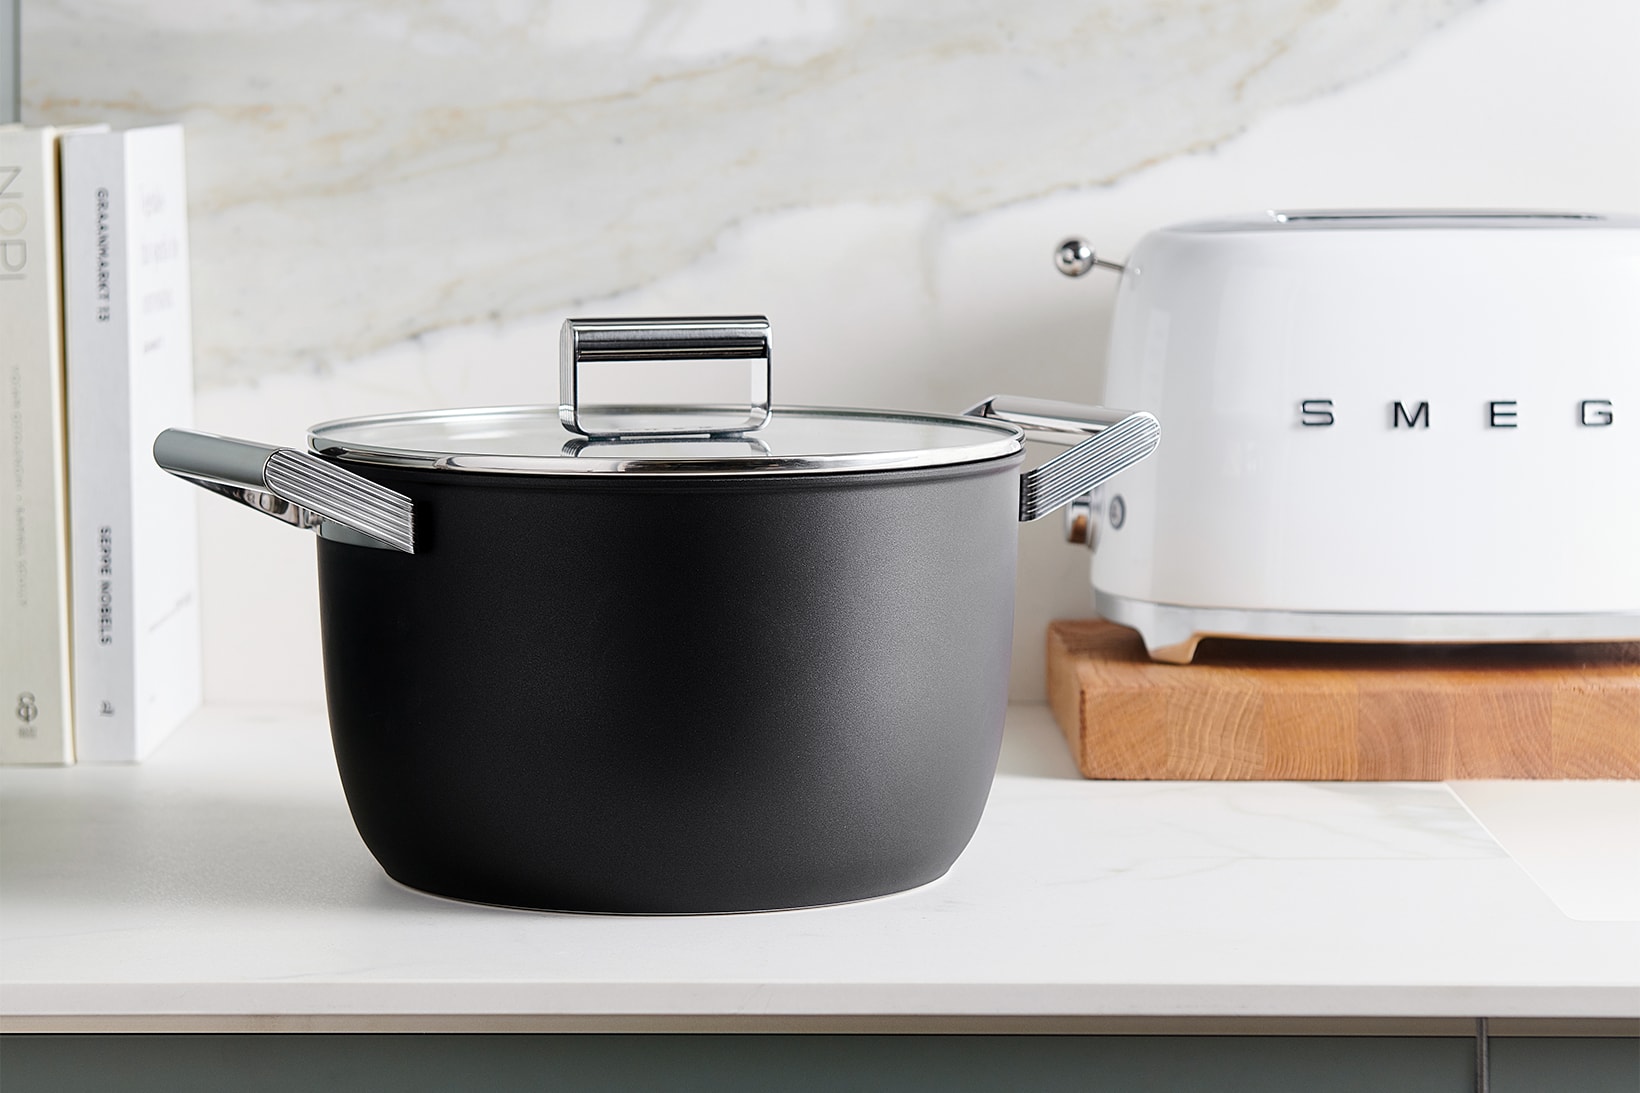 smeg cookware collection casserole dish kitchen appliances